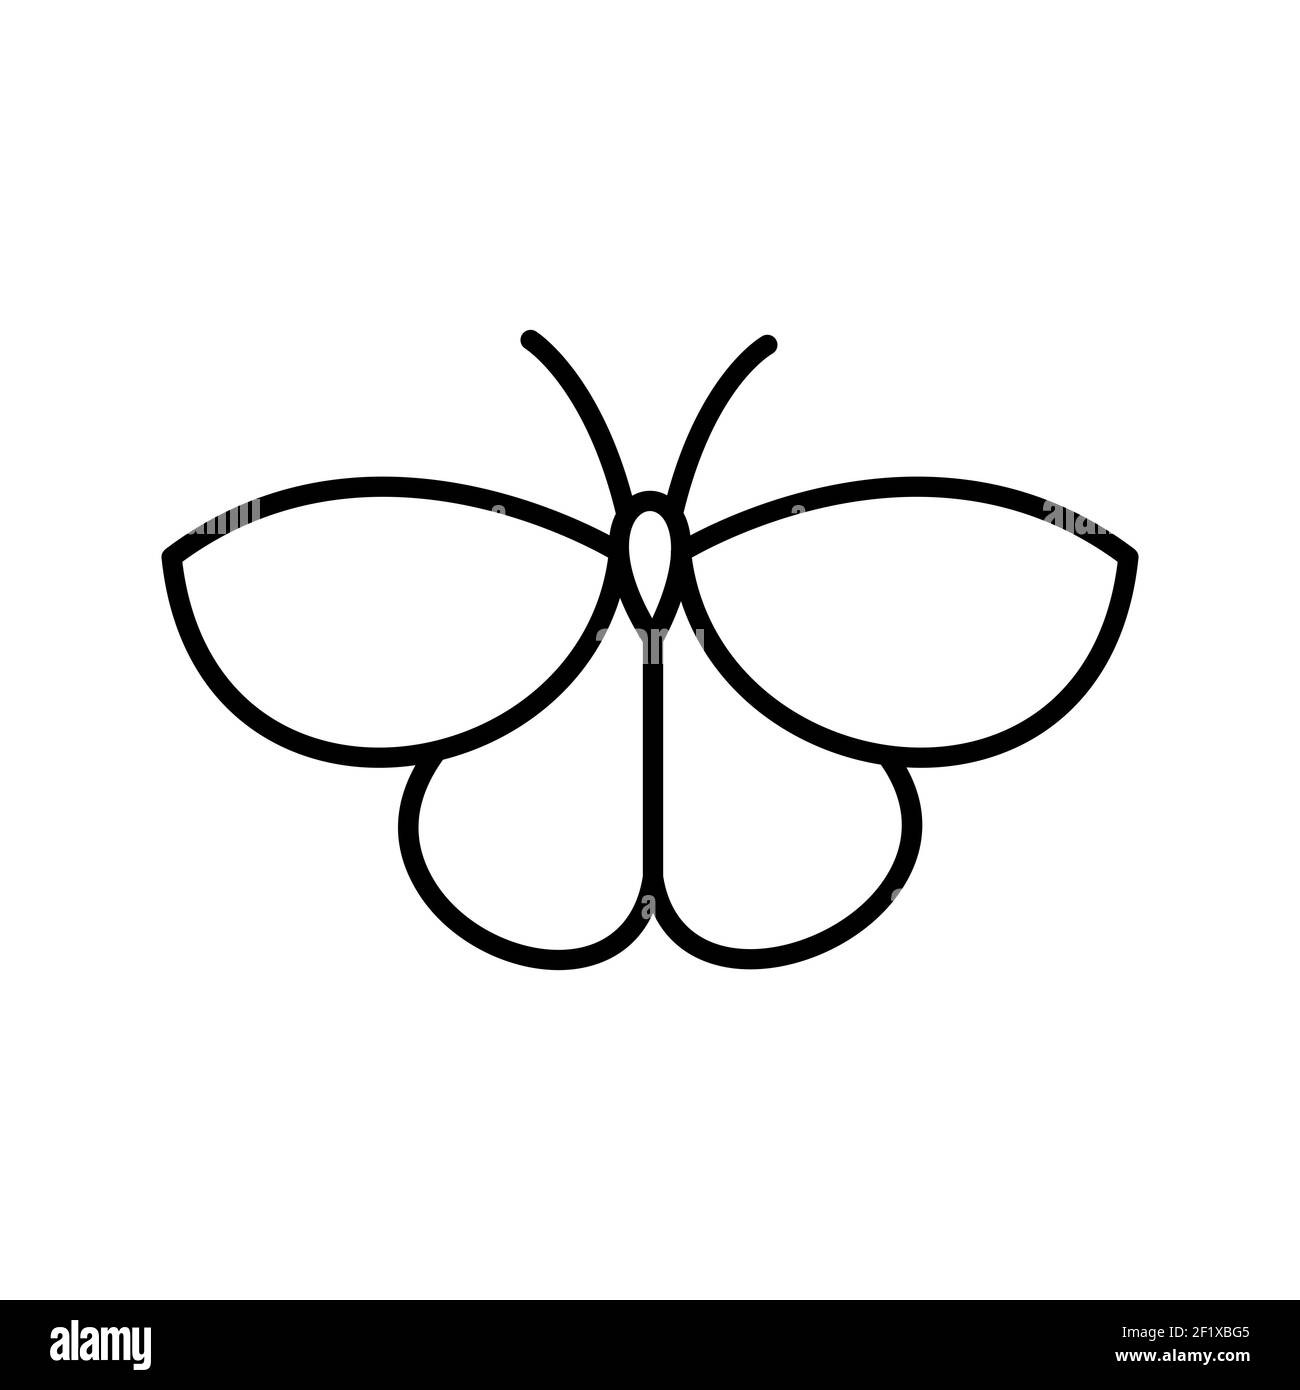 Eine Illustration eines einzigartigen Schmetterlingslinienvektorikons auf Ein weißer Hintergrund Stockfoto